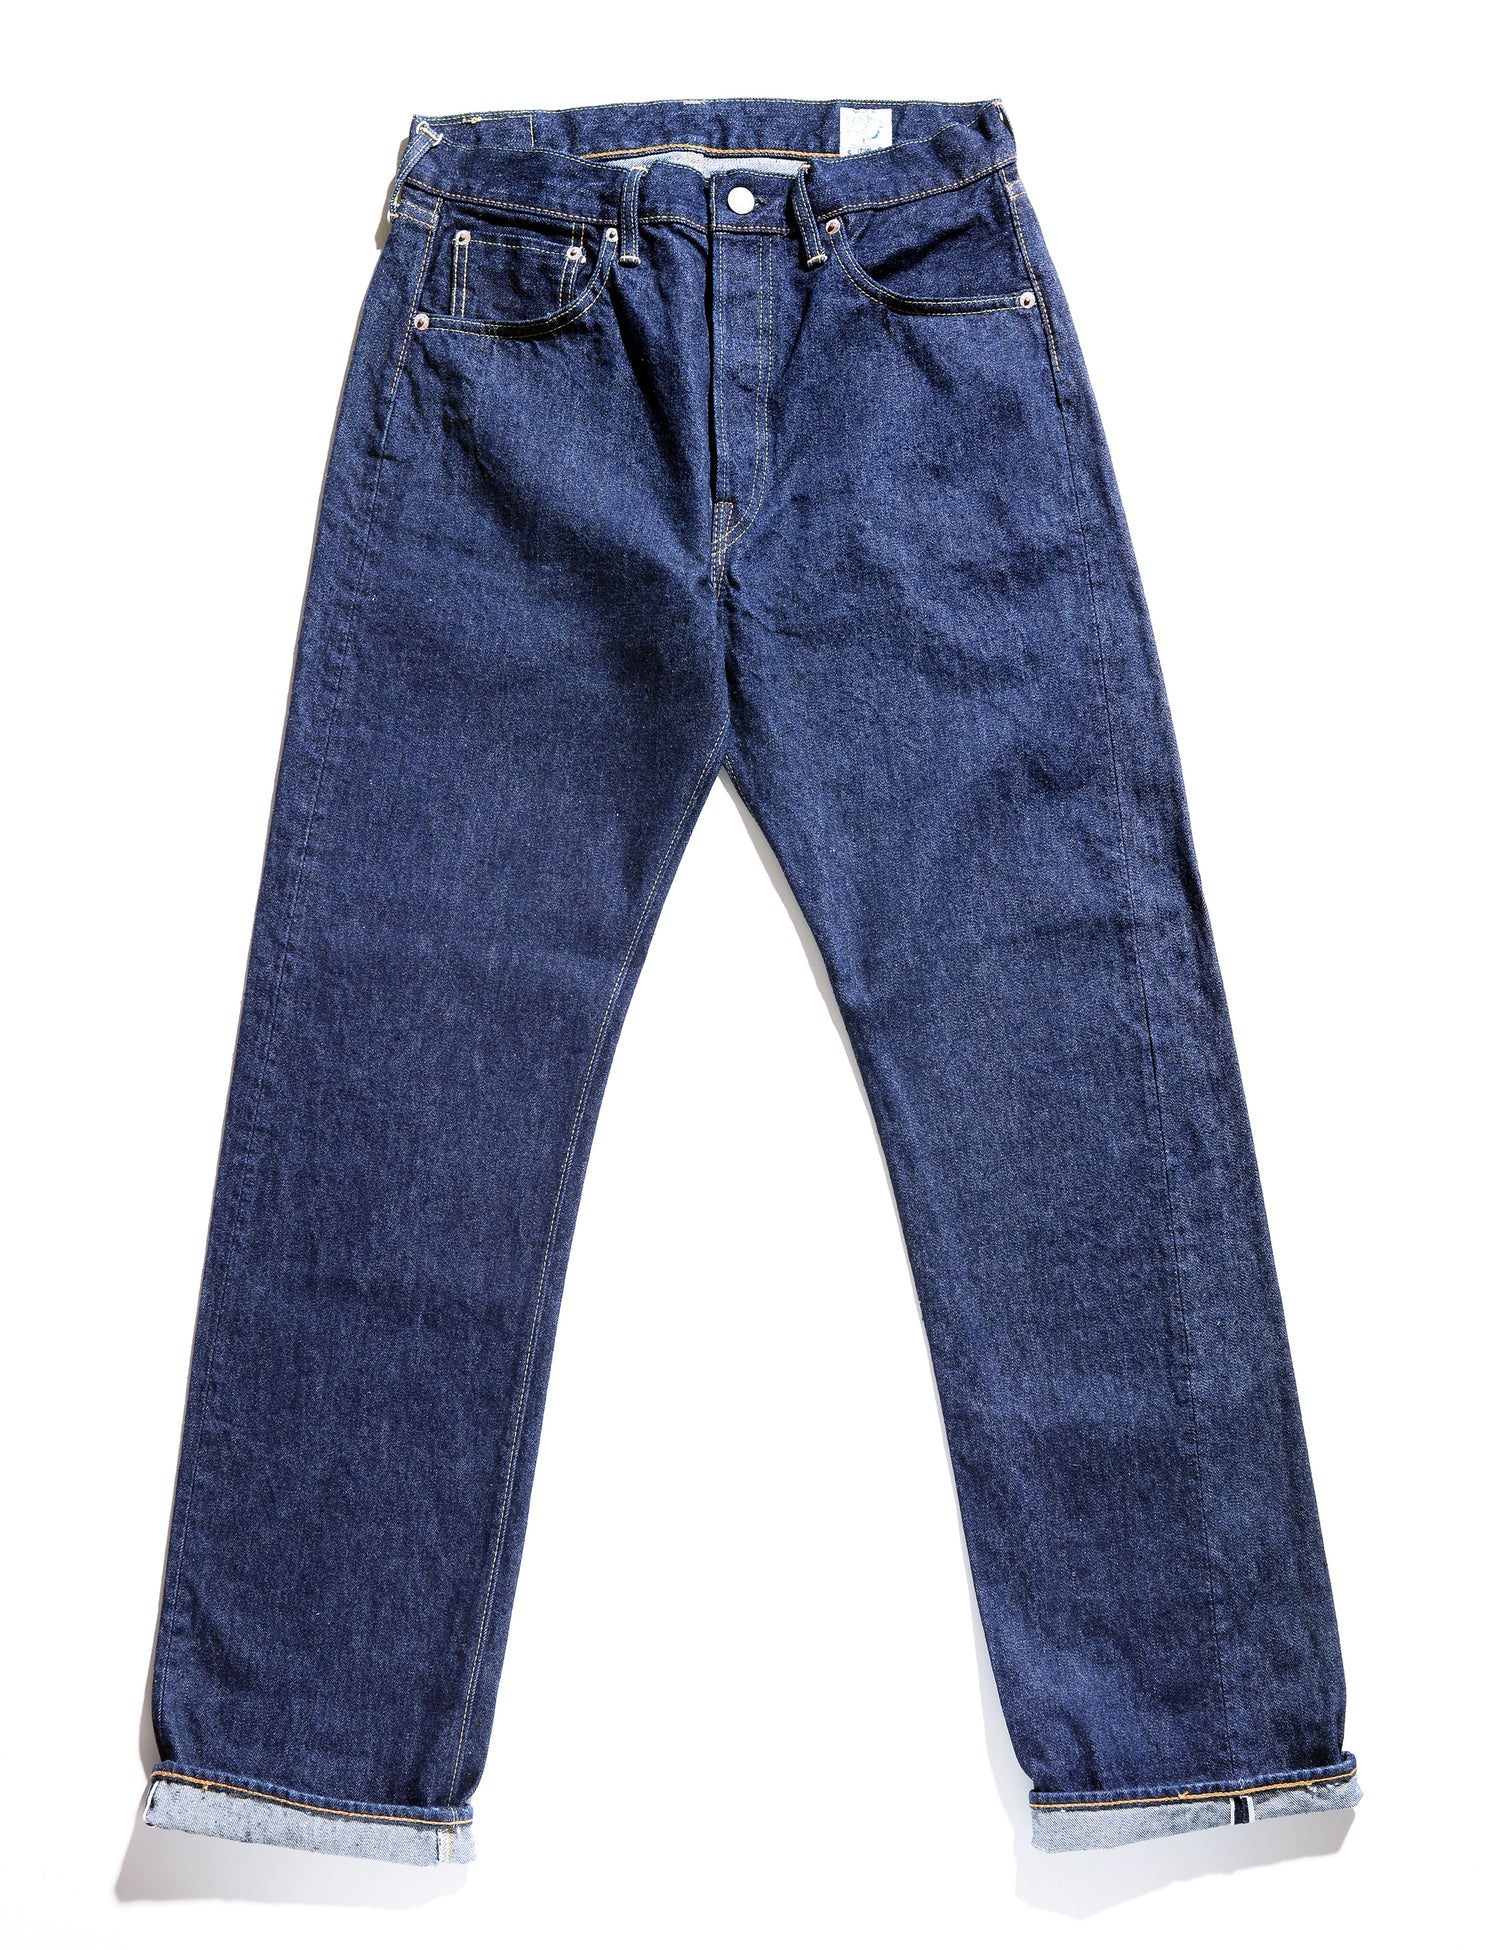 105 Standard Fit Selvedge Denim Jeans full length shot